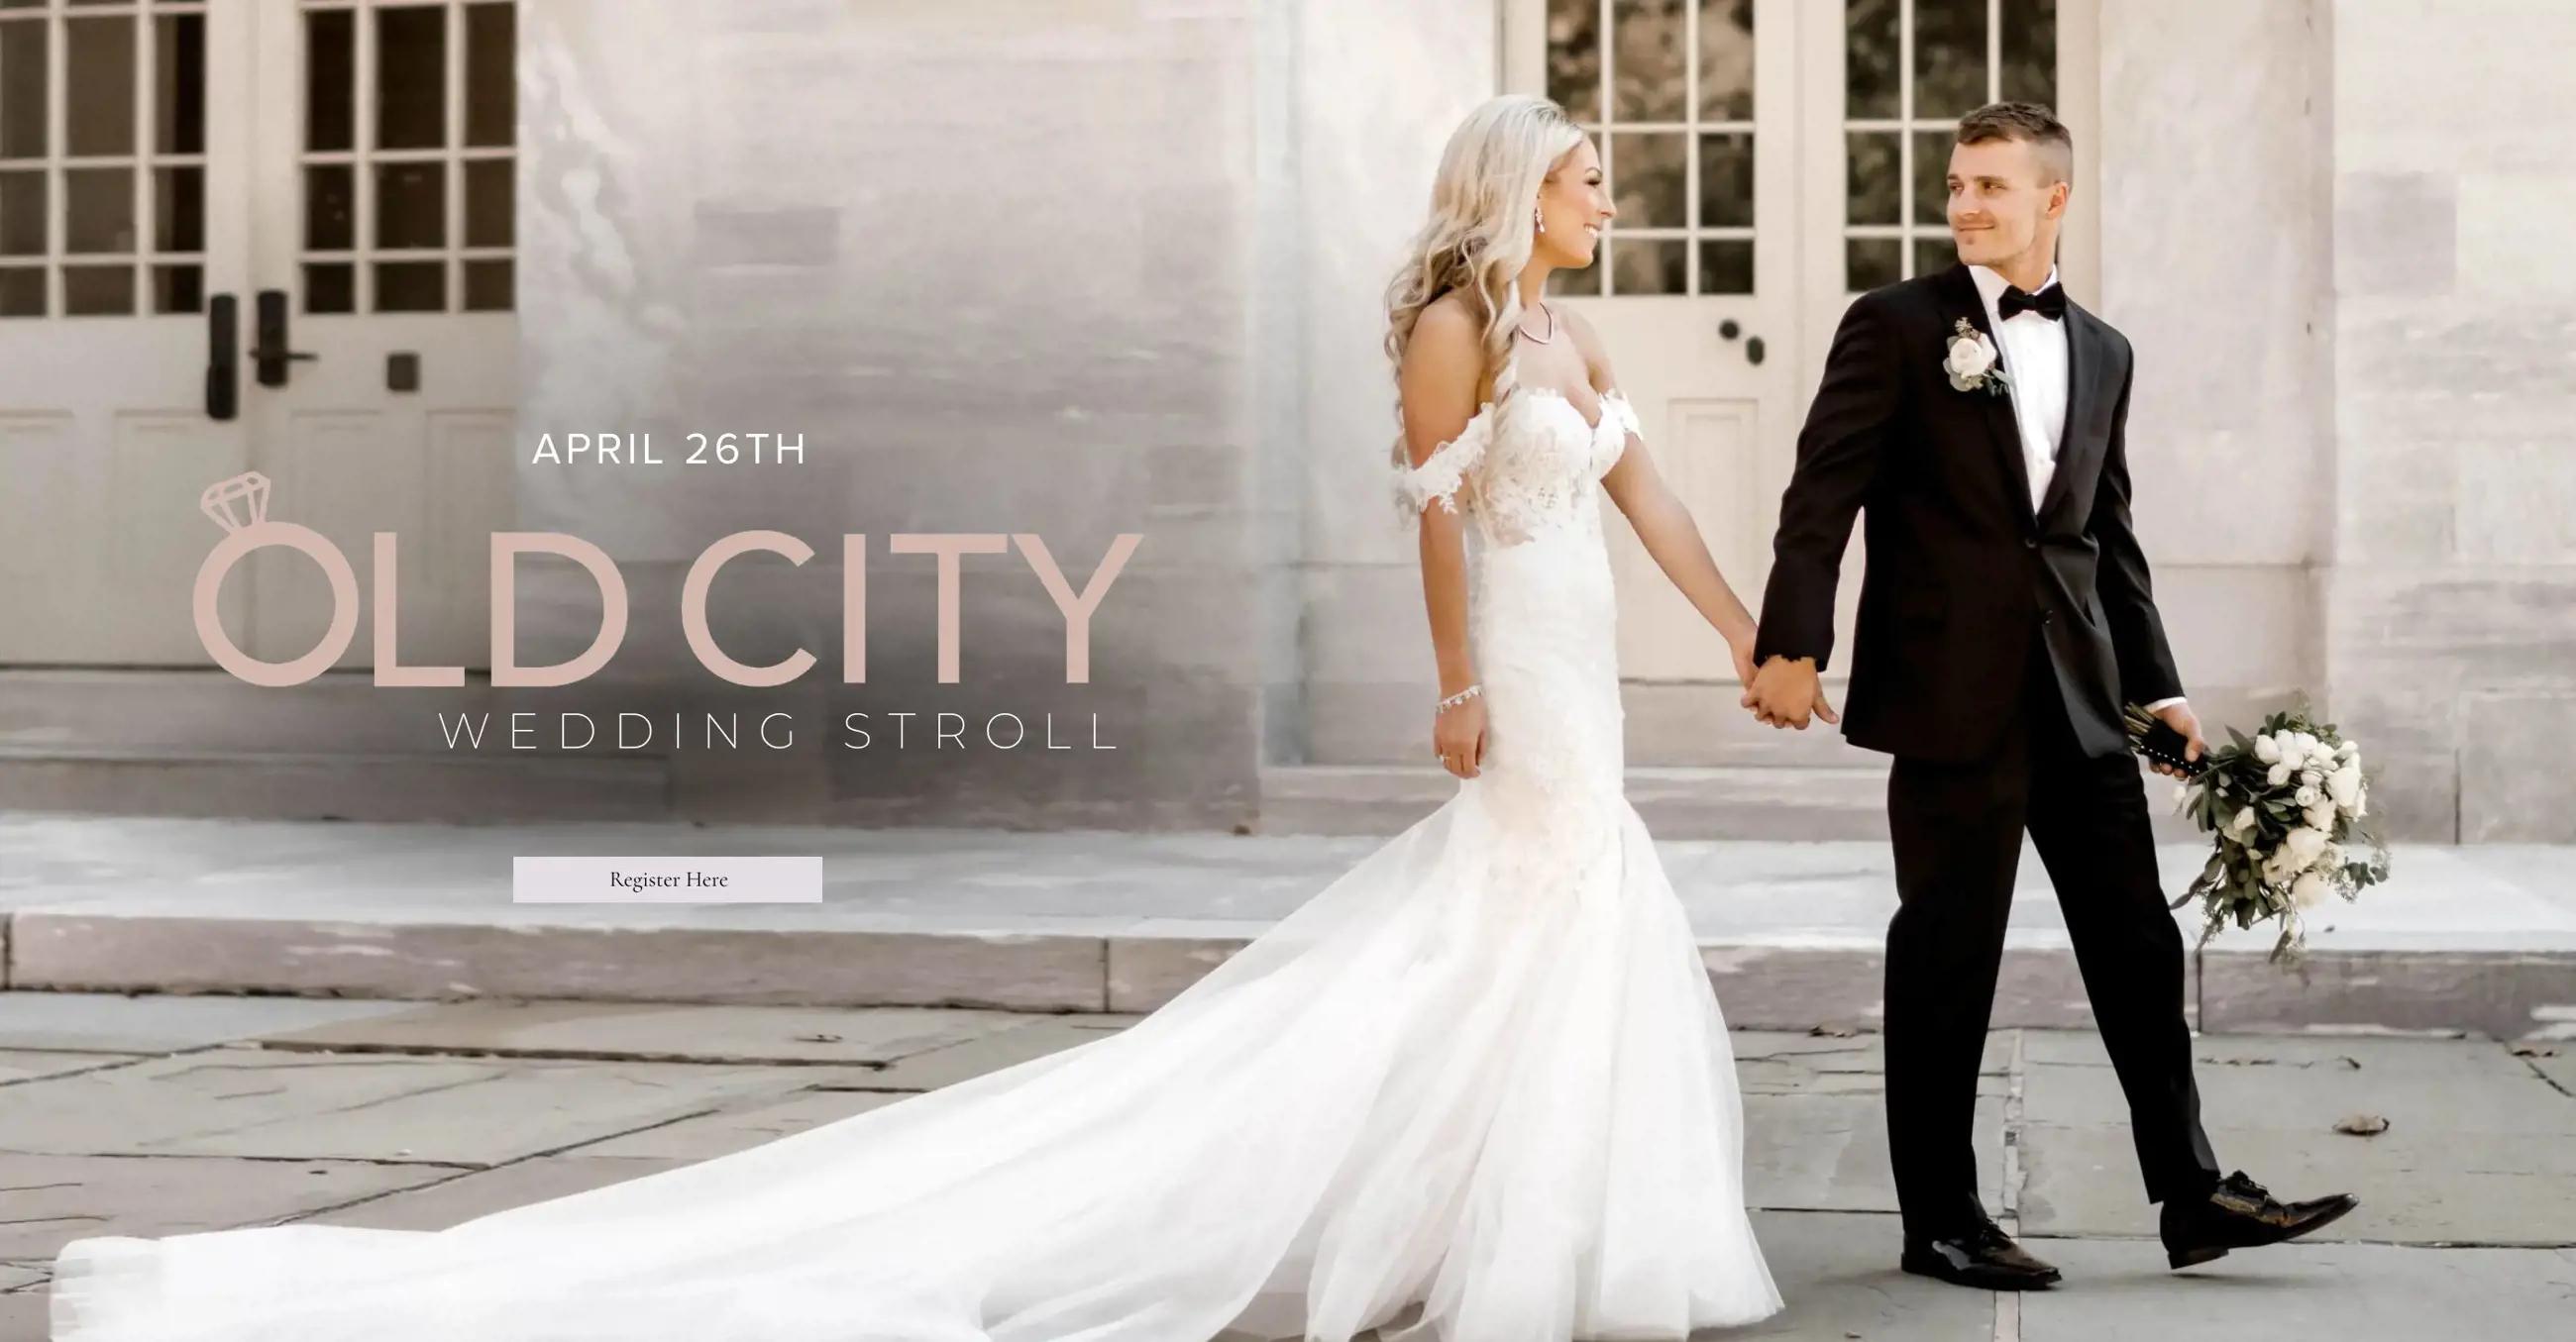 "Old City Wedding Stroll Event" banner for desktop